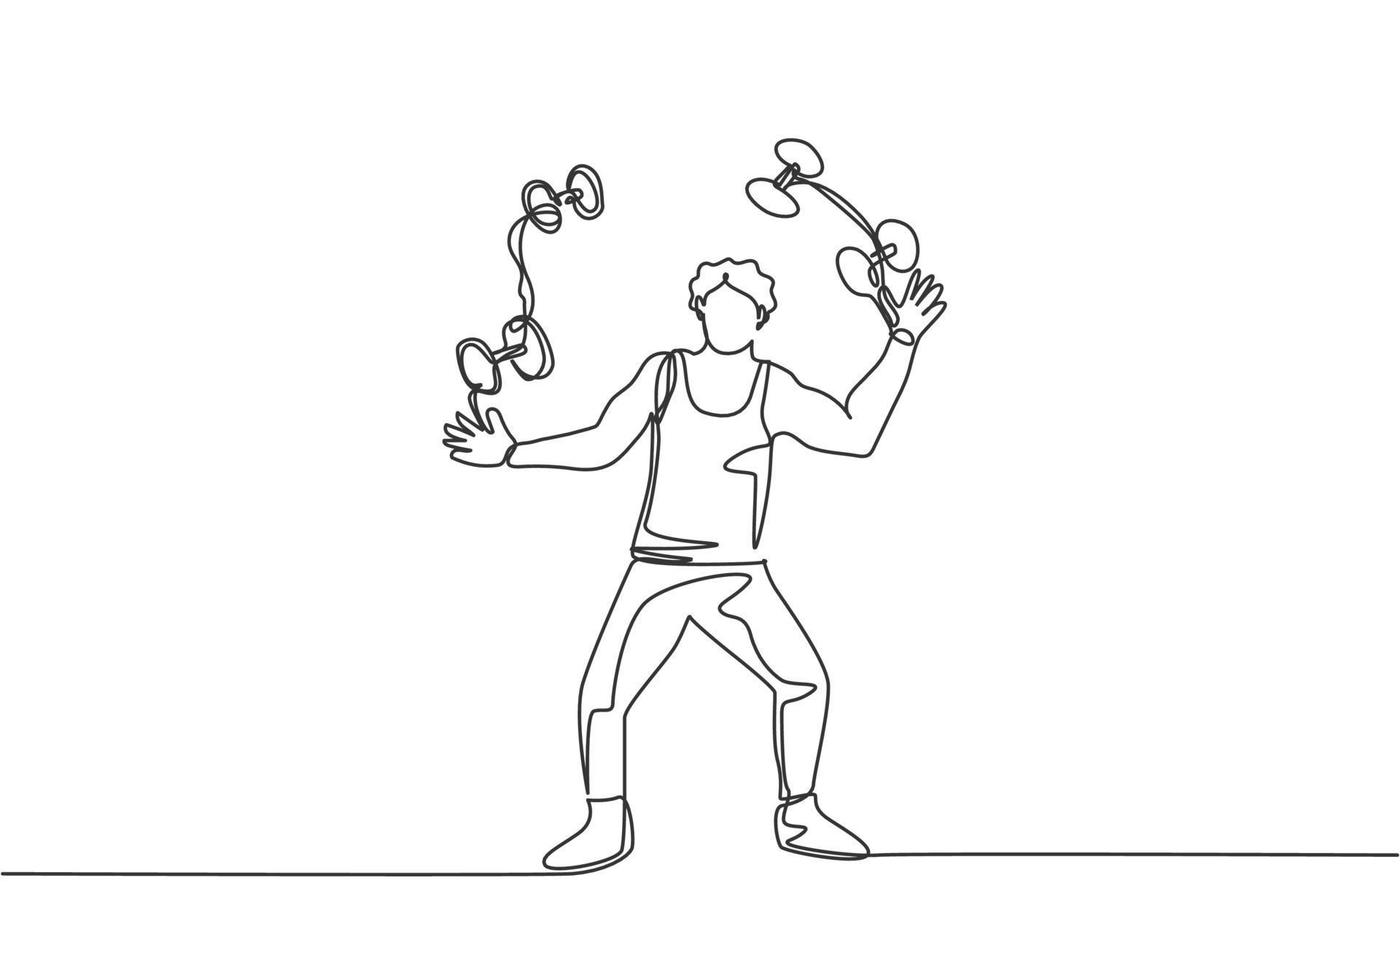 enkele lijn die een acrobaat tekent die met kleine halters jongleert. dit spel vereist behendigheid, concentratie en constante oefening. moderne doorlopende lijn tekenen ontwerp grafische vectorillustratie. vector